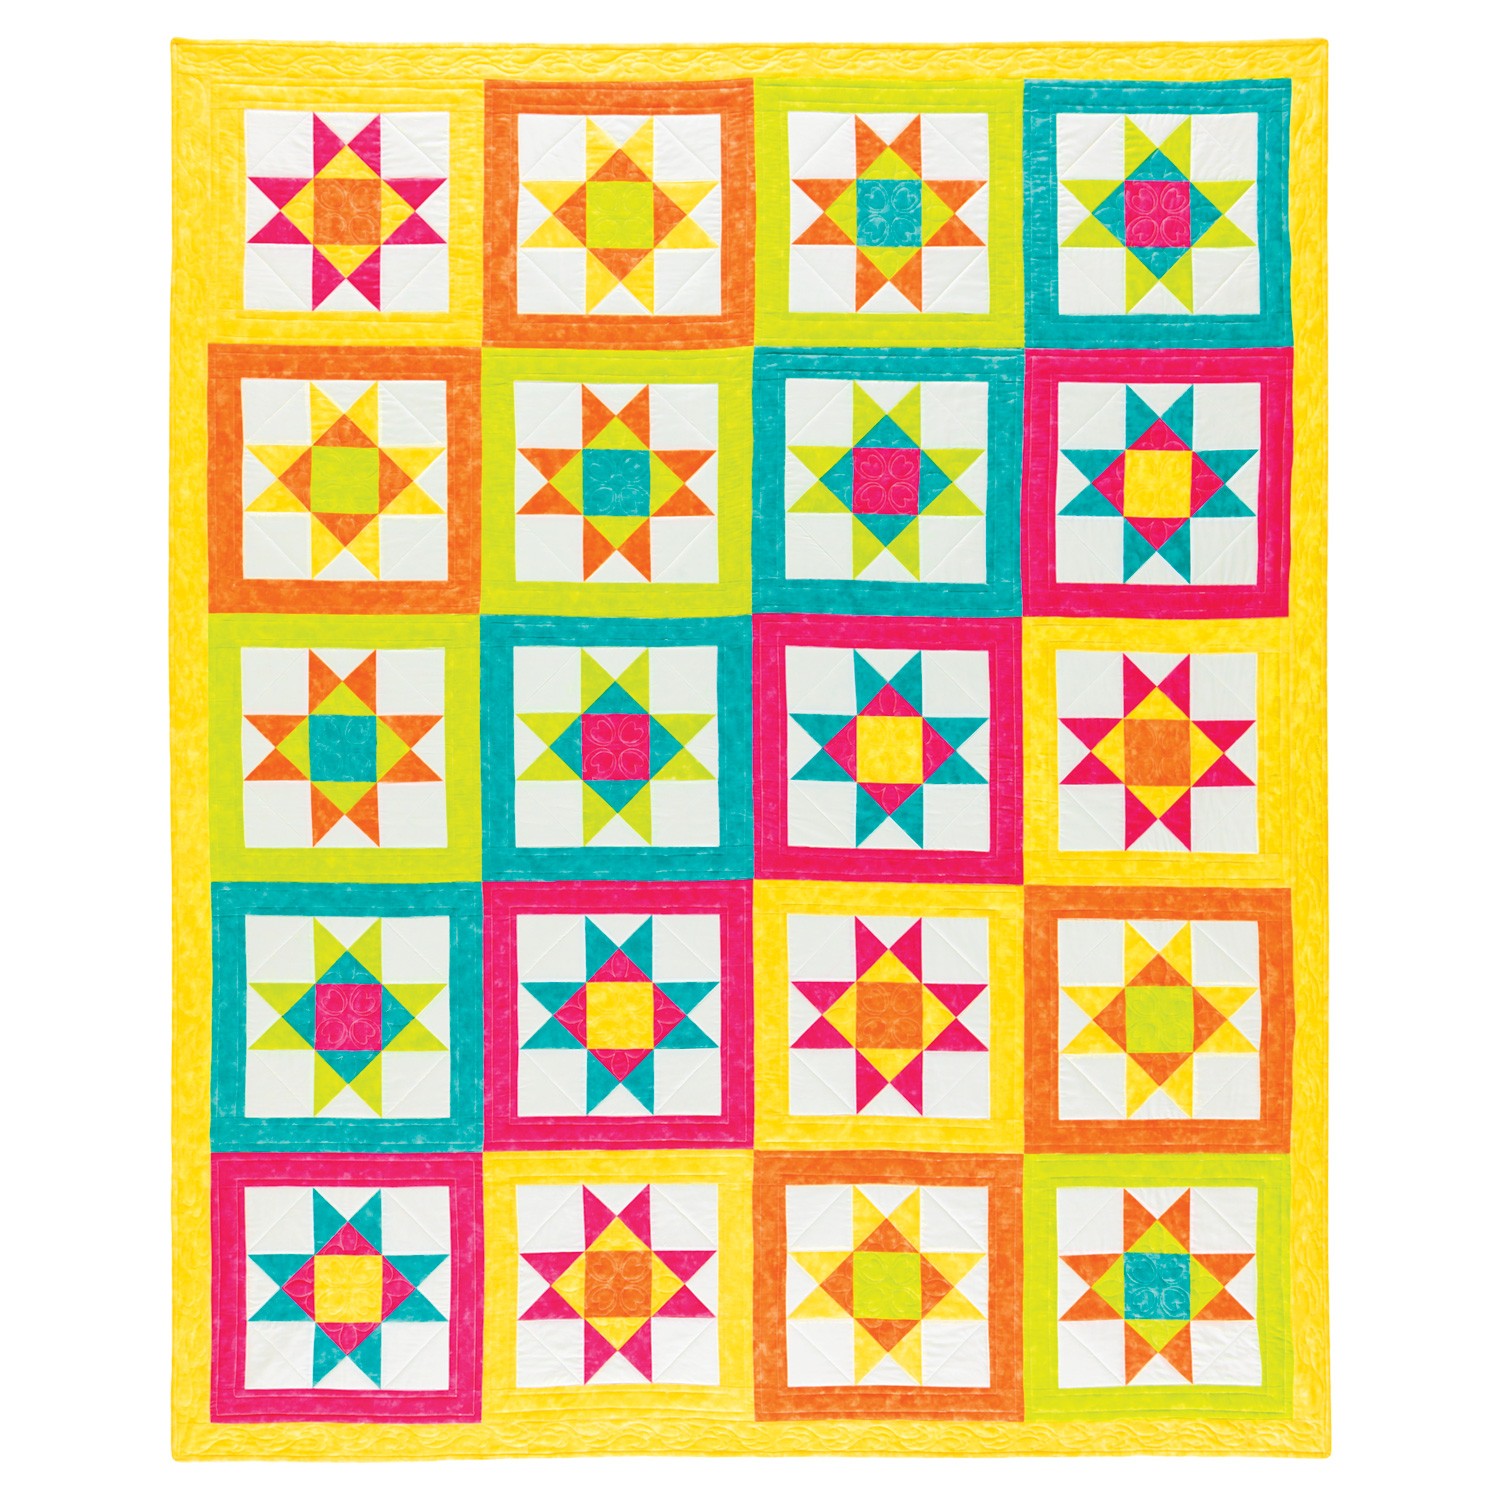 GO! Vibrant Ohio Star Quilt Pattern - AccuQuilt